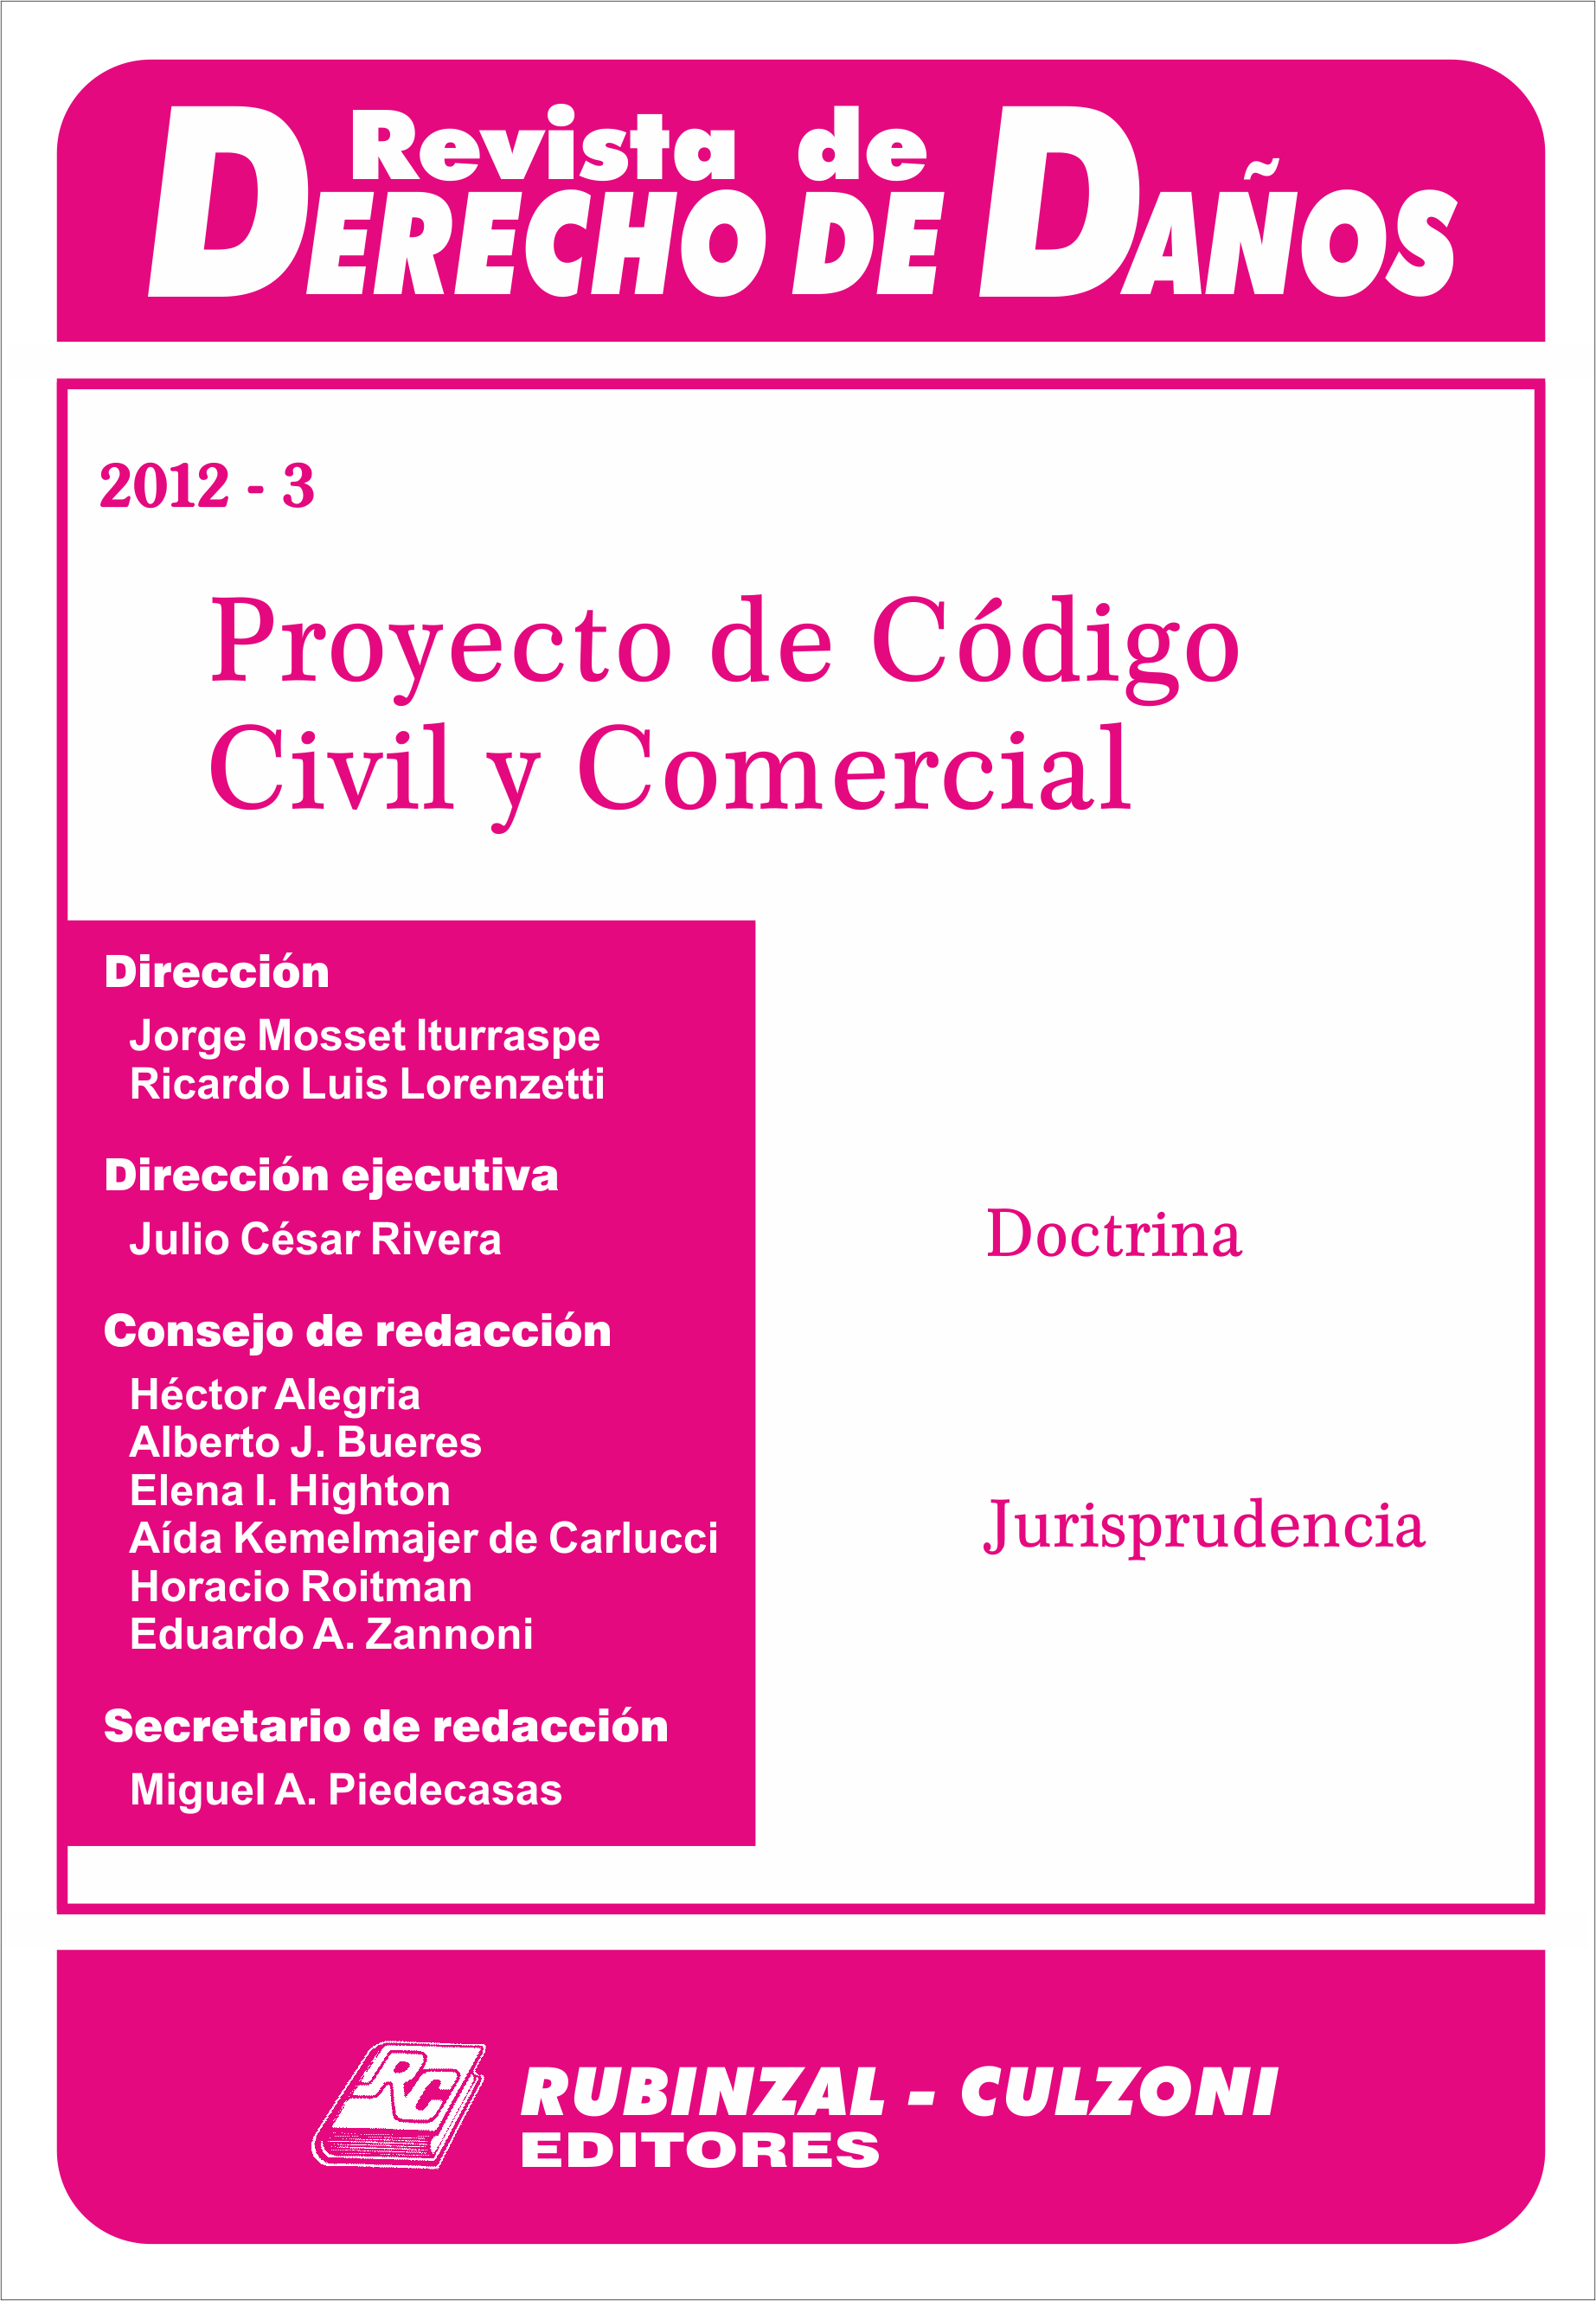 Revista de Derecho de Daños - Proyecto de Código Civil y Comercial